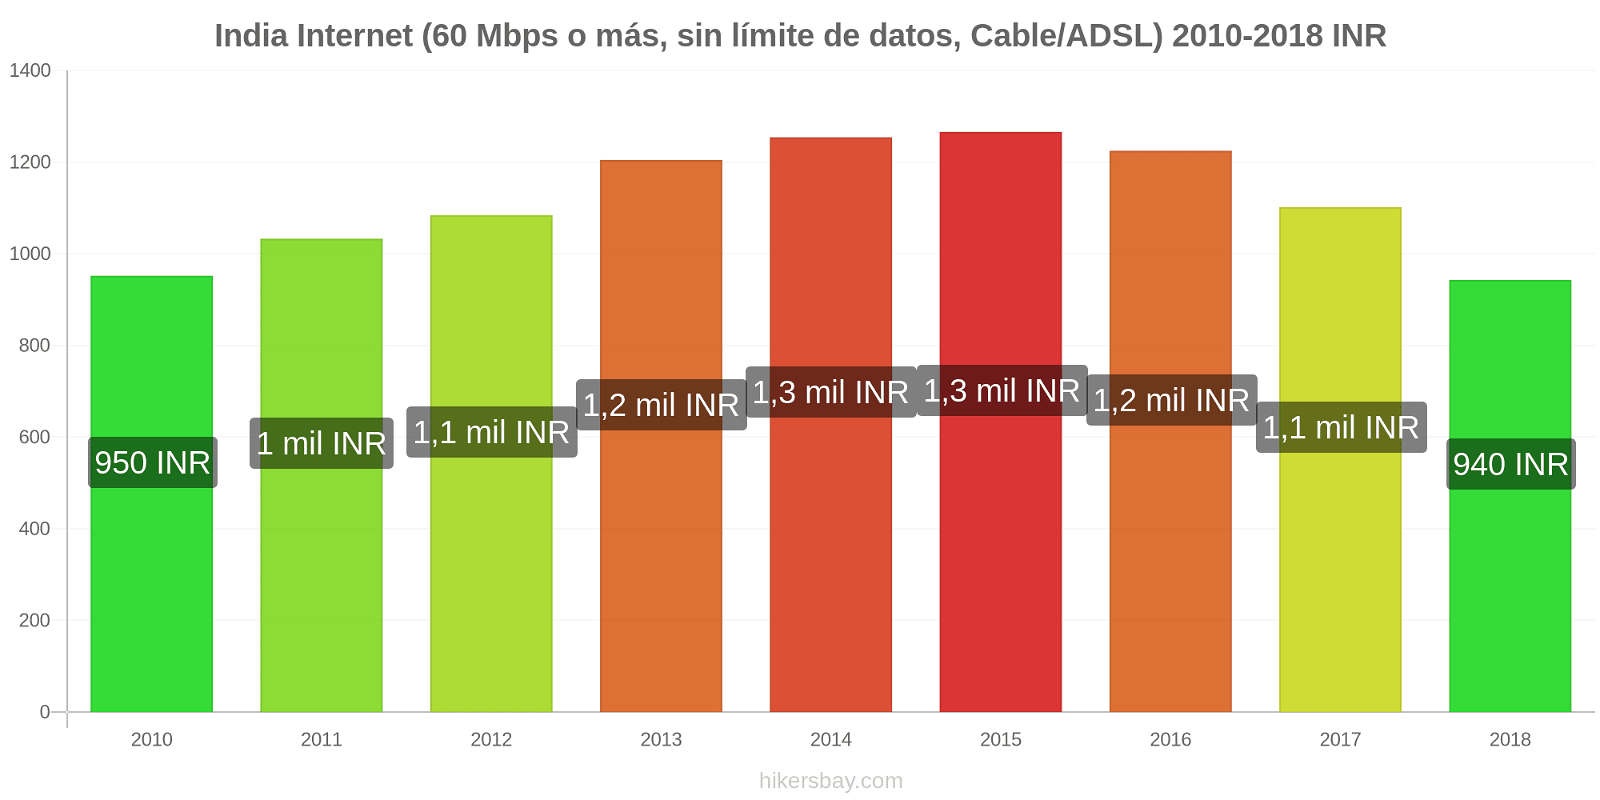 India cambios de precios Internet (60 Mbps o más, datos ilimitados, cable/ADSL) hikersbay.com